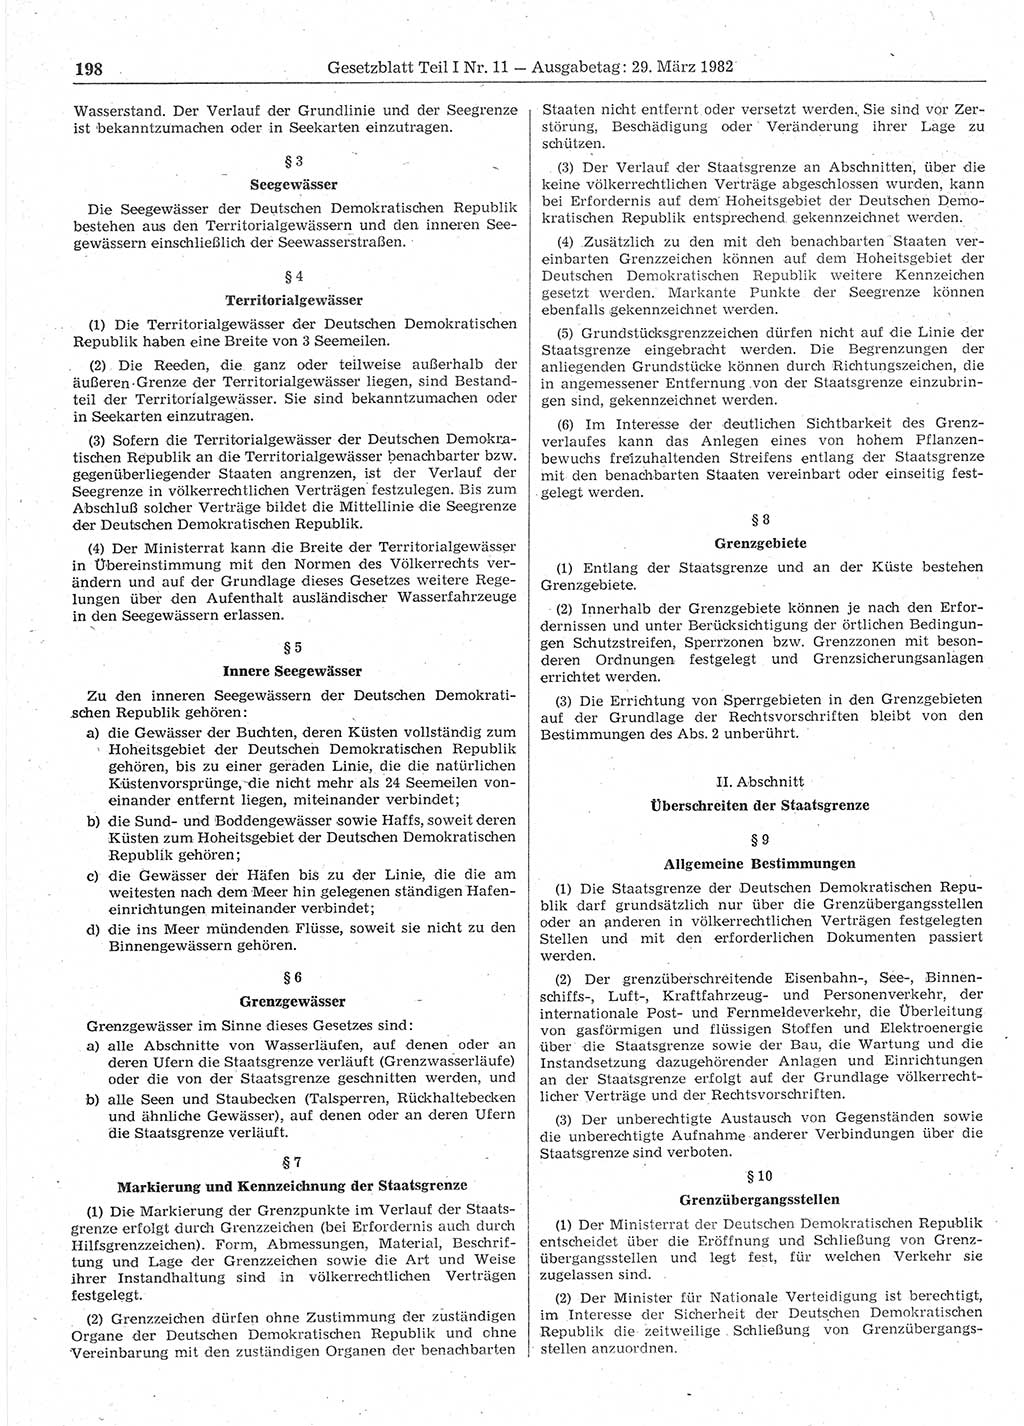 Gesetzblatt (GBl.) der Deutschen Demokratischen Republik (DDR) Teil Ⅰ 1982, Seite 198 (GBl. DDR Ⅰ 1982, S. 198)